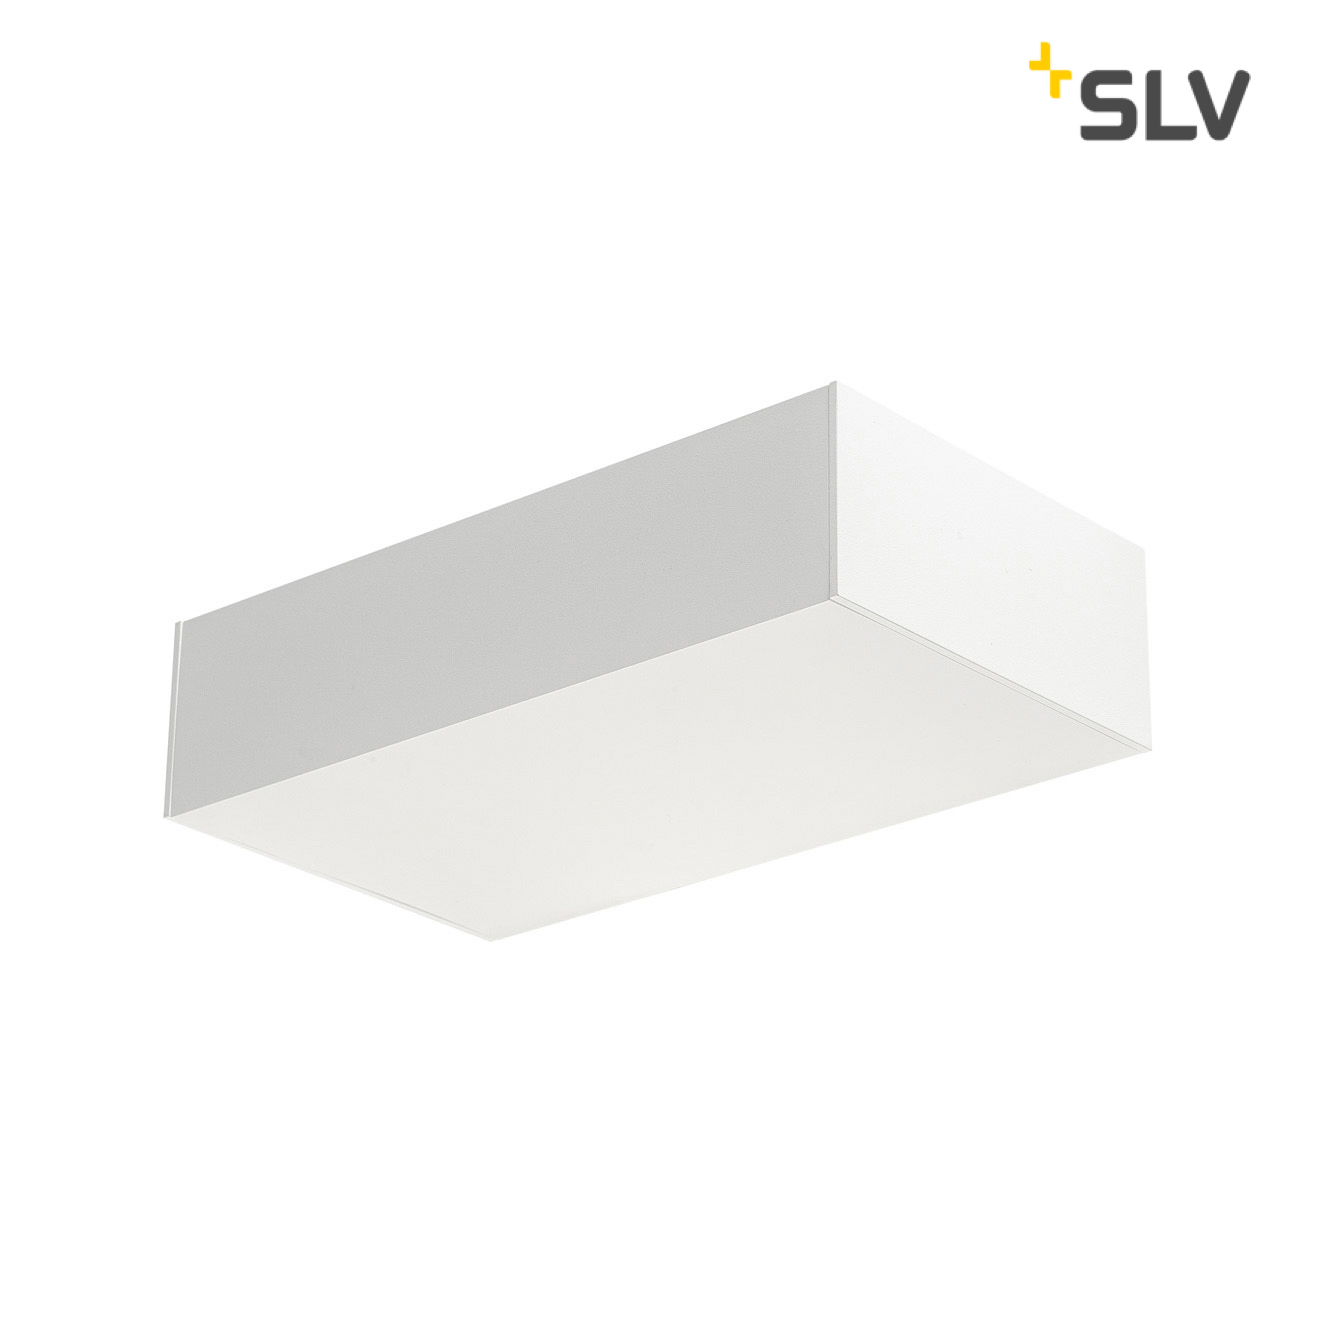 SLV Shell 30 LED Wall Light white 5600lm 3000K CRI80